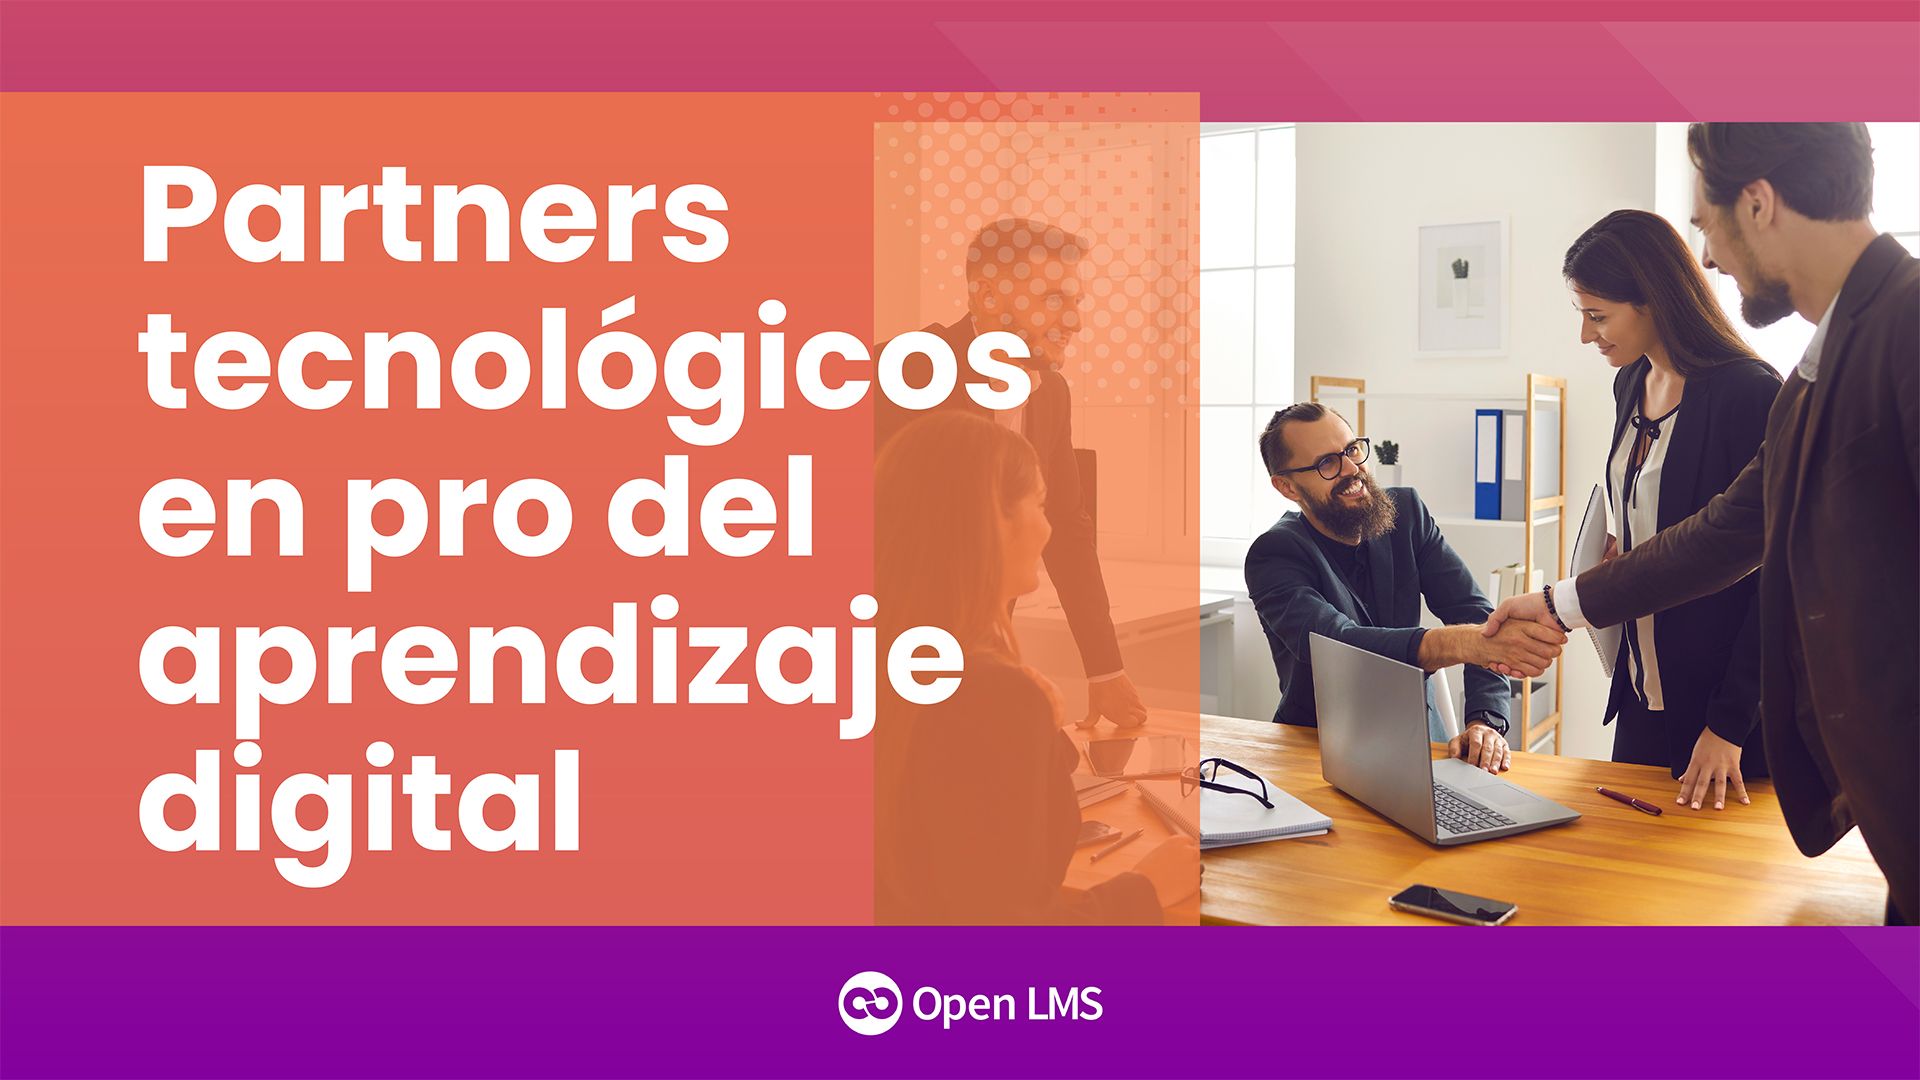 Samoo y Open LMS: partners tecnológicos en pro del aprendizaje digital